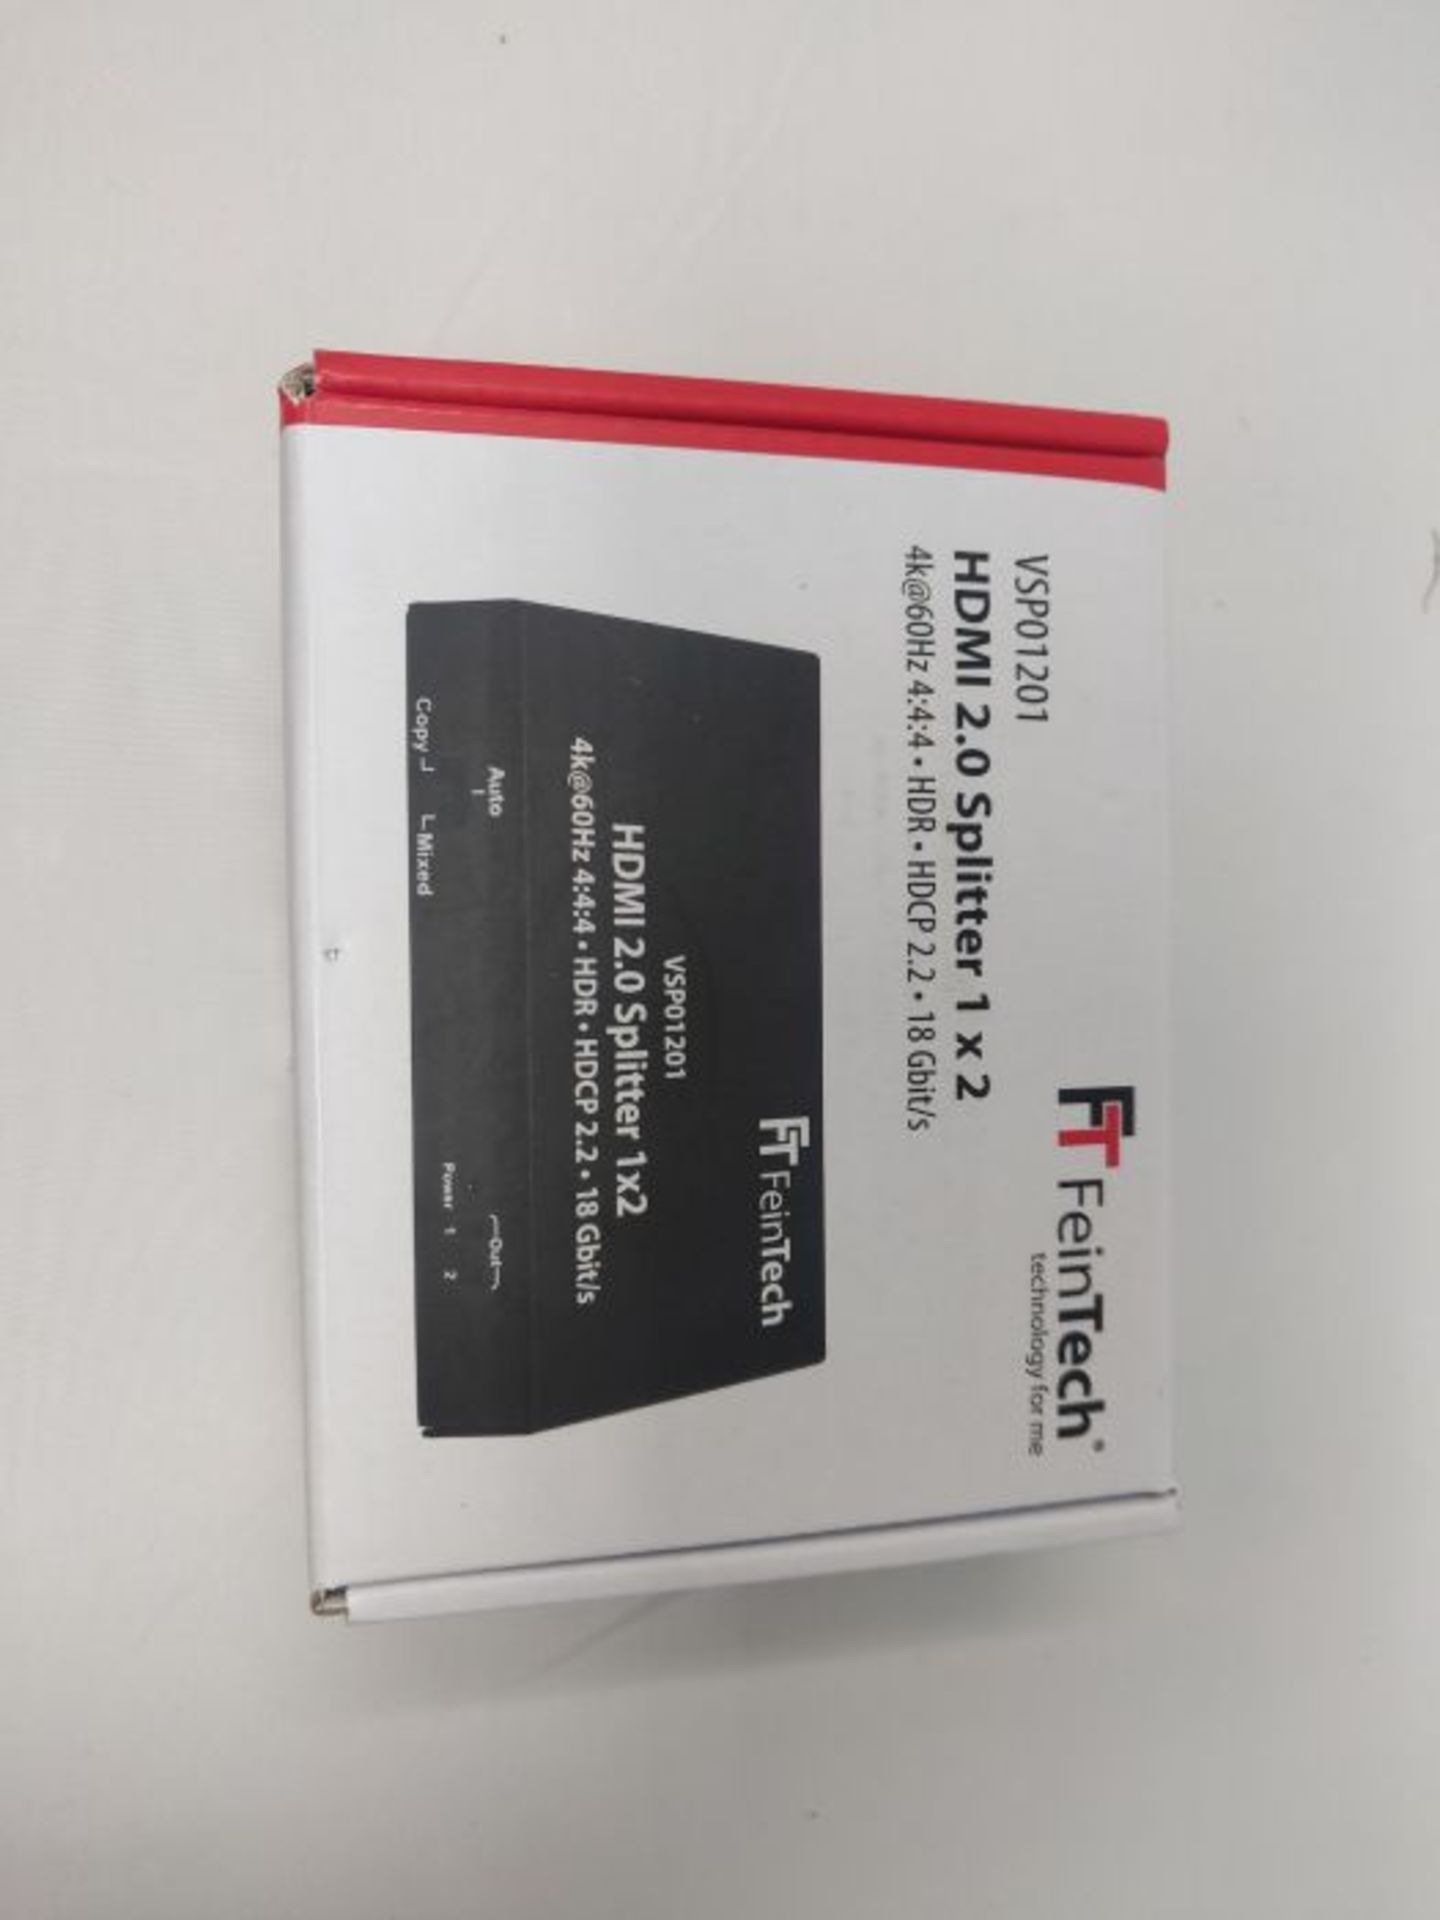 FeinTech VSP01201 HDMI 2.0 Splitter 1 auf 2 Verteiler Ultra-HD 4K@60Hz YUV 4:4:4 HDR H - Image 2 of 3